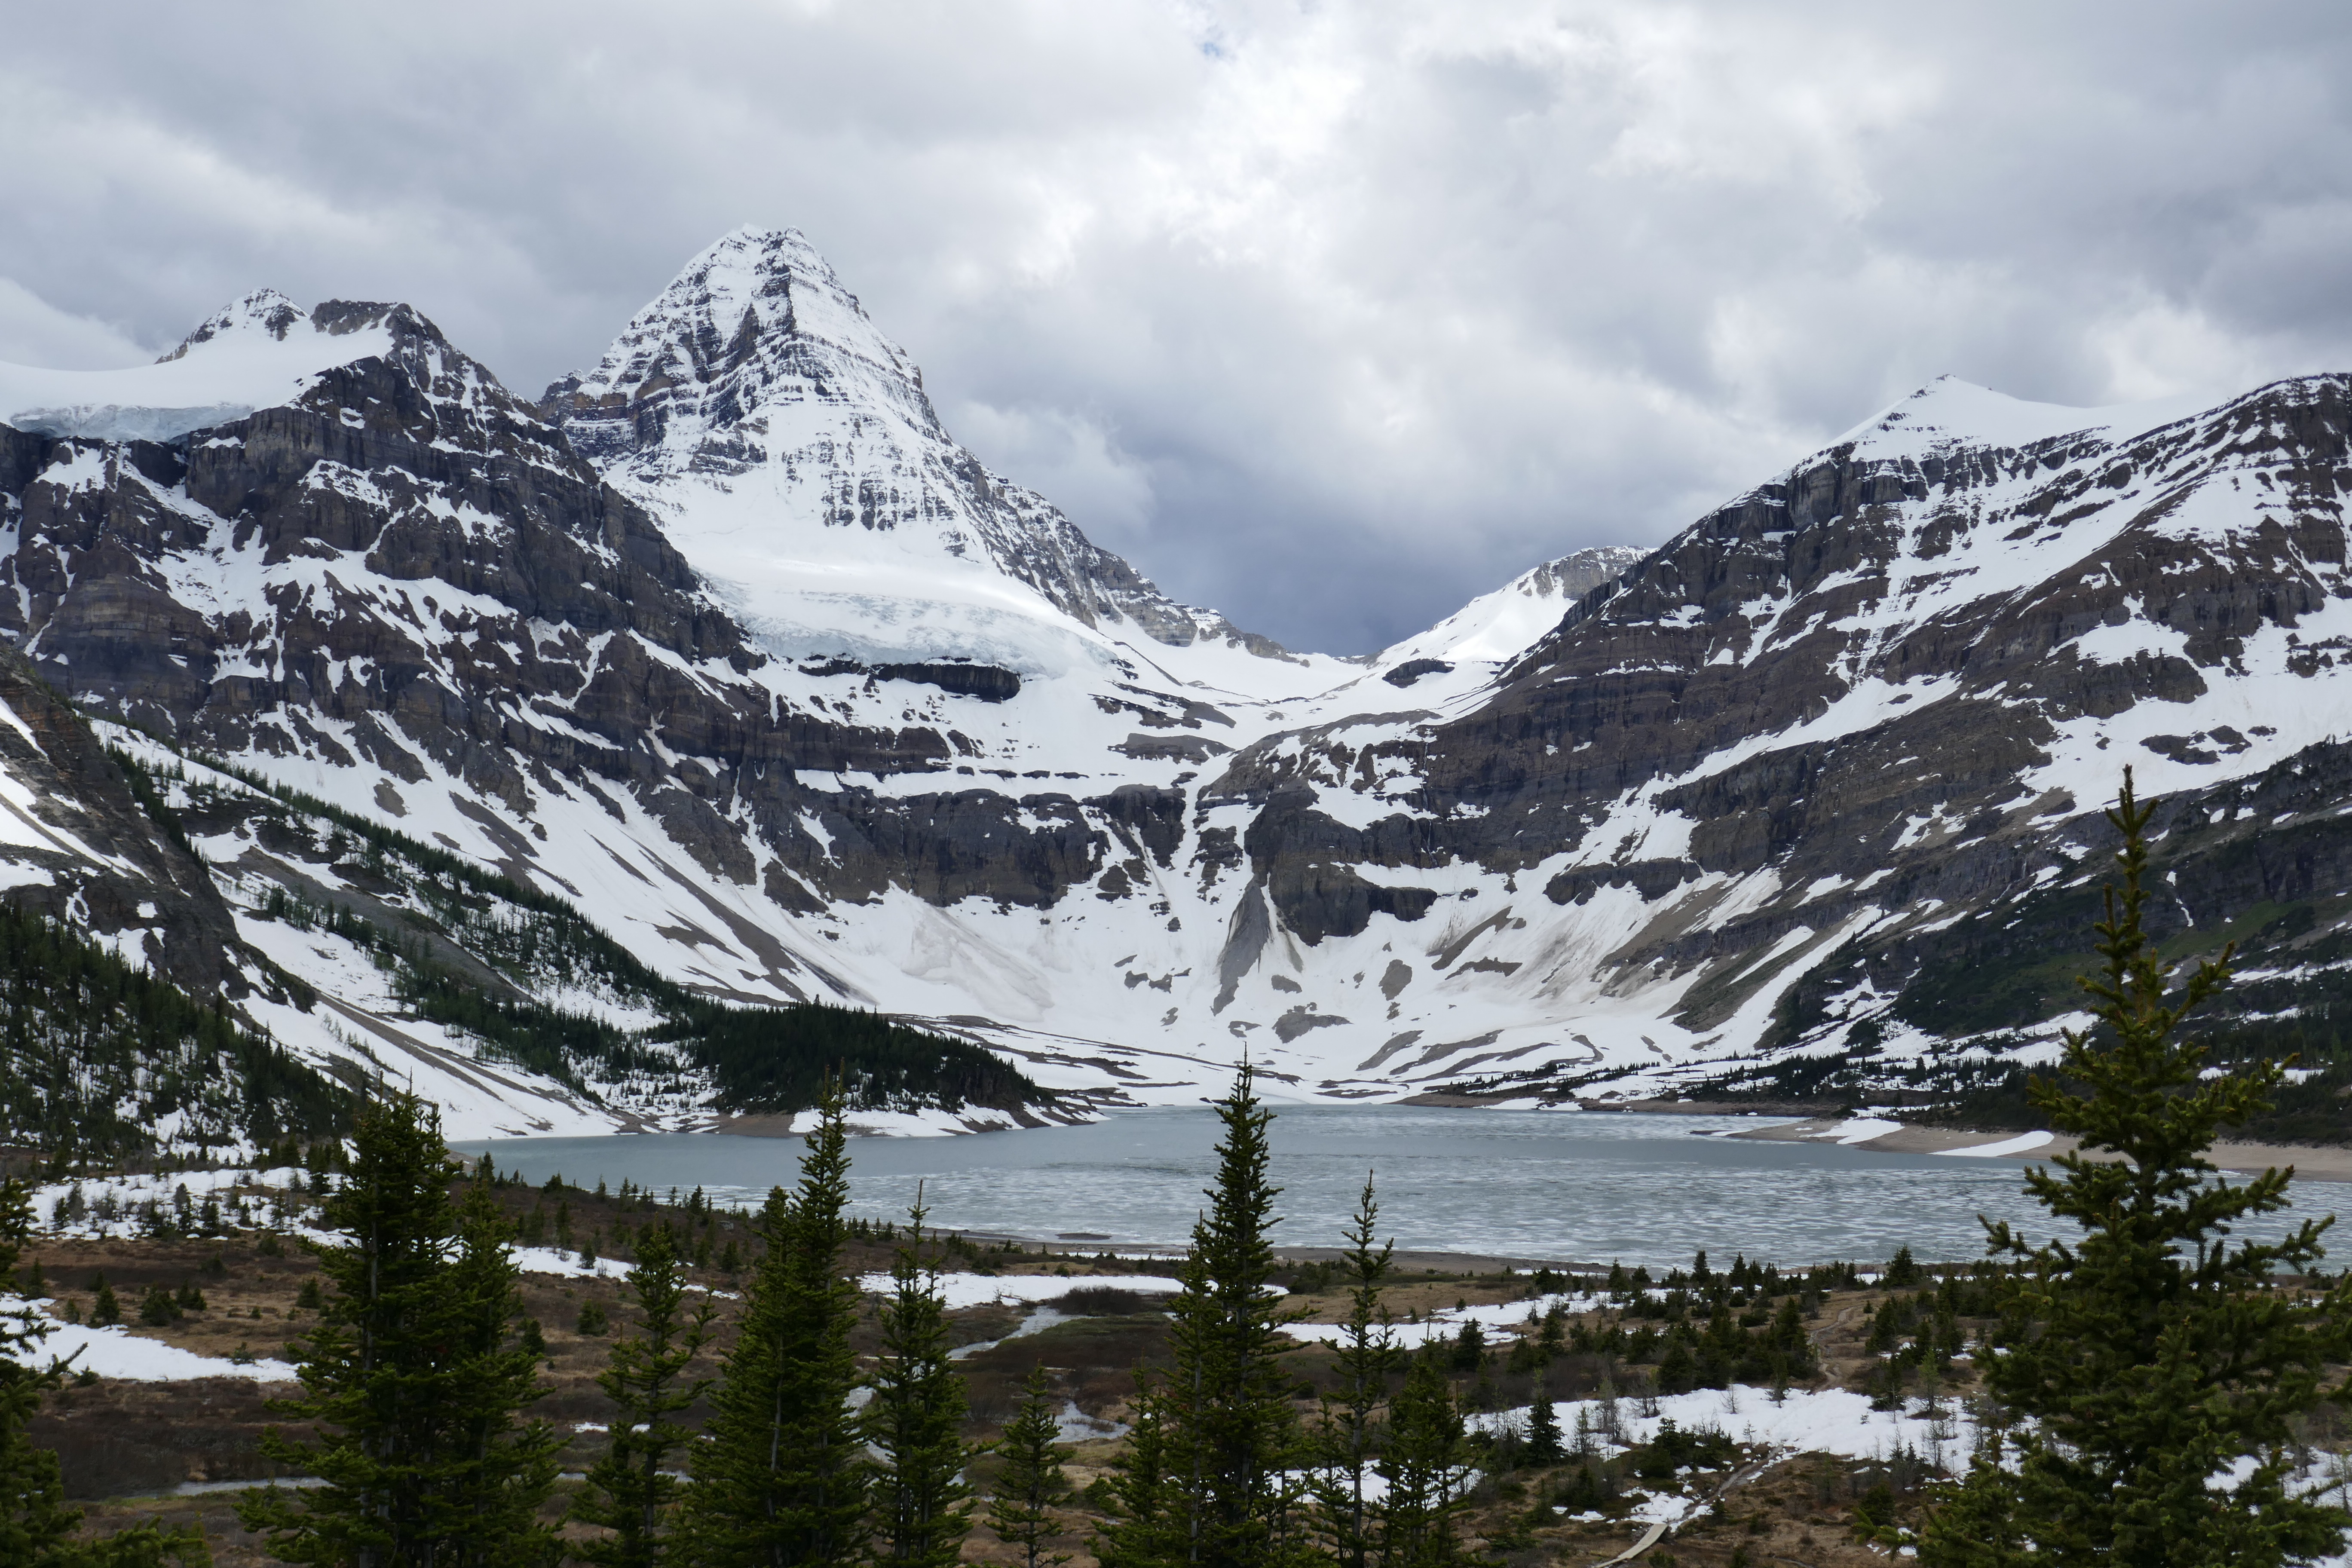 Classic Mount Assiniboine view